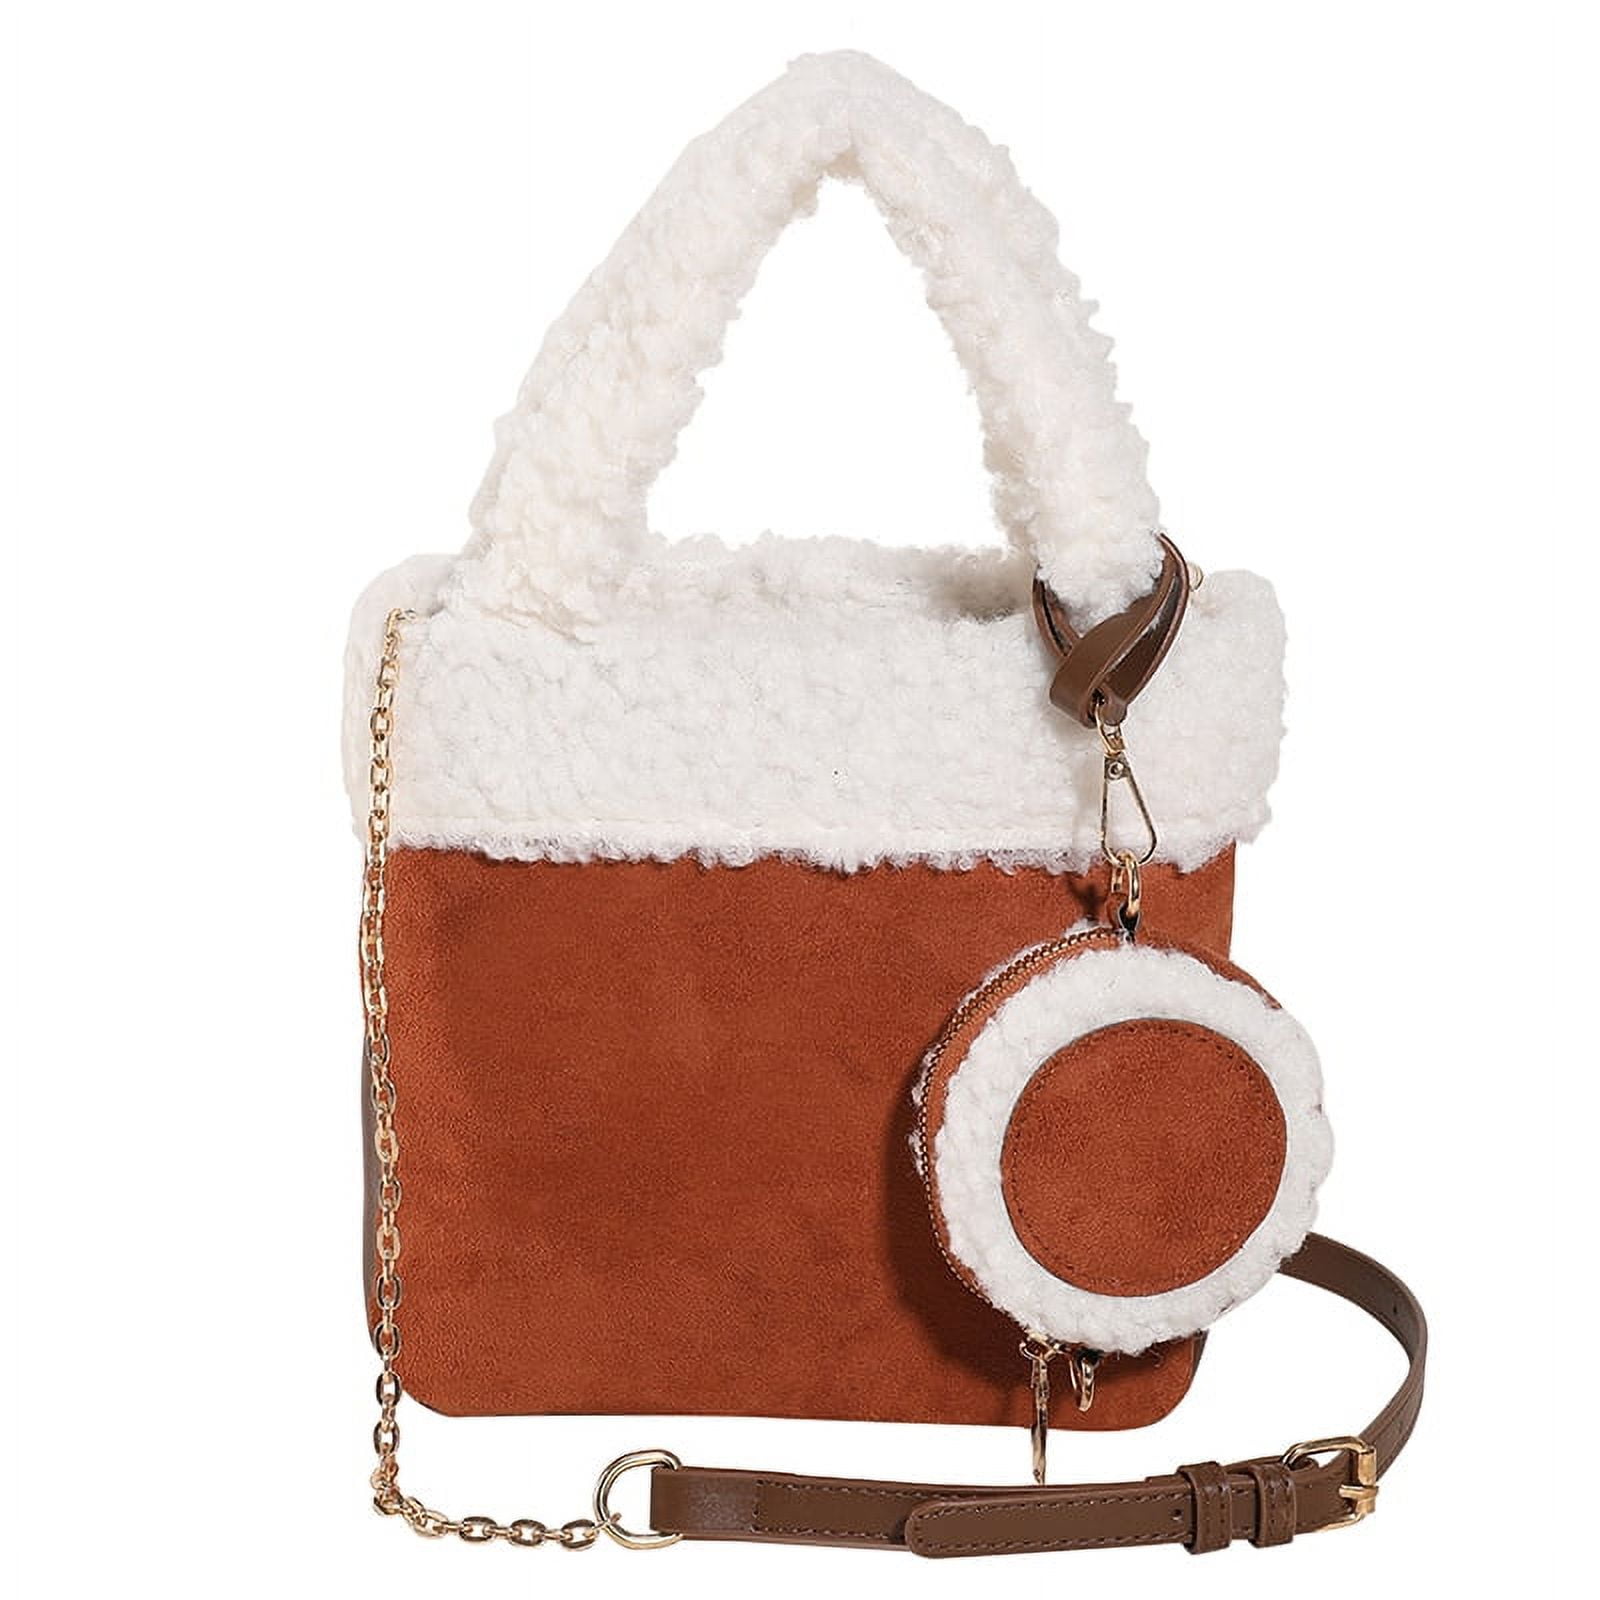 Buy foci cozi Women's & Girl's Crossbody Handbag (Pink) at Amazon.in